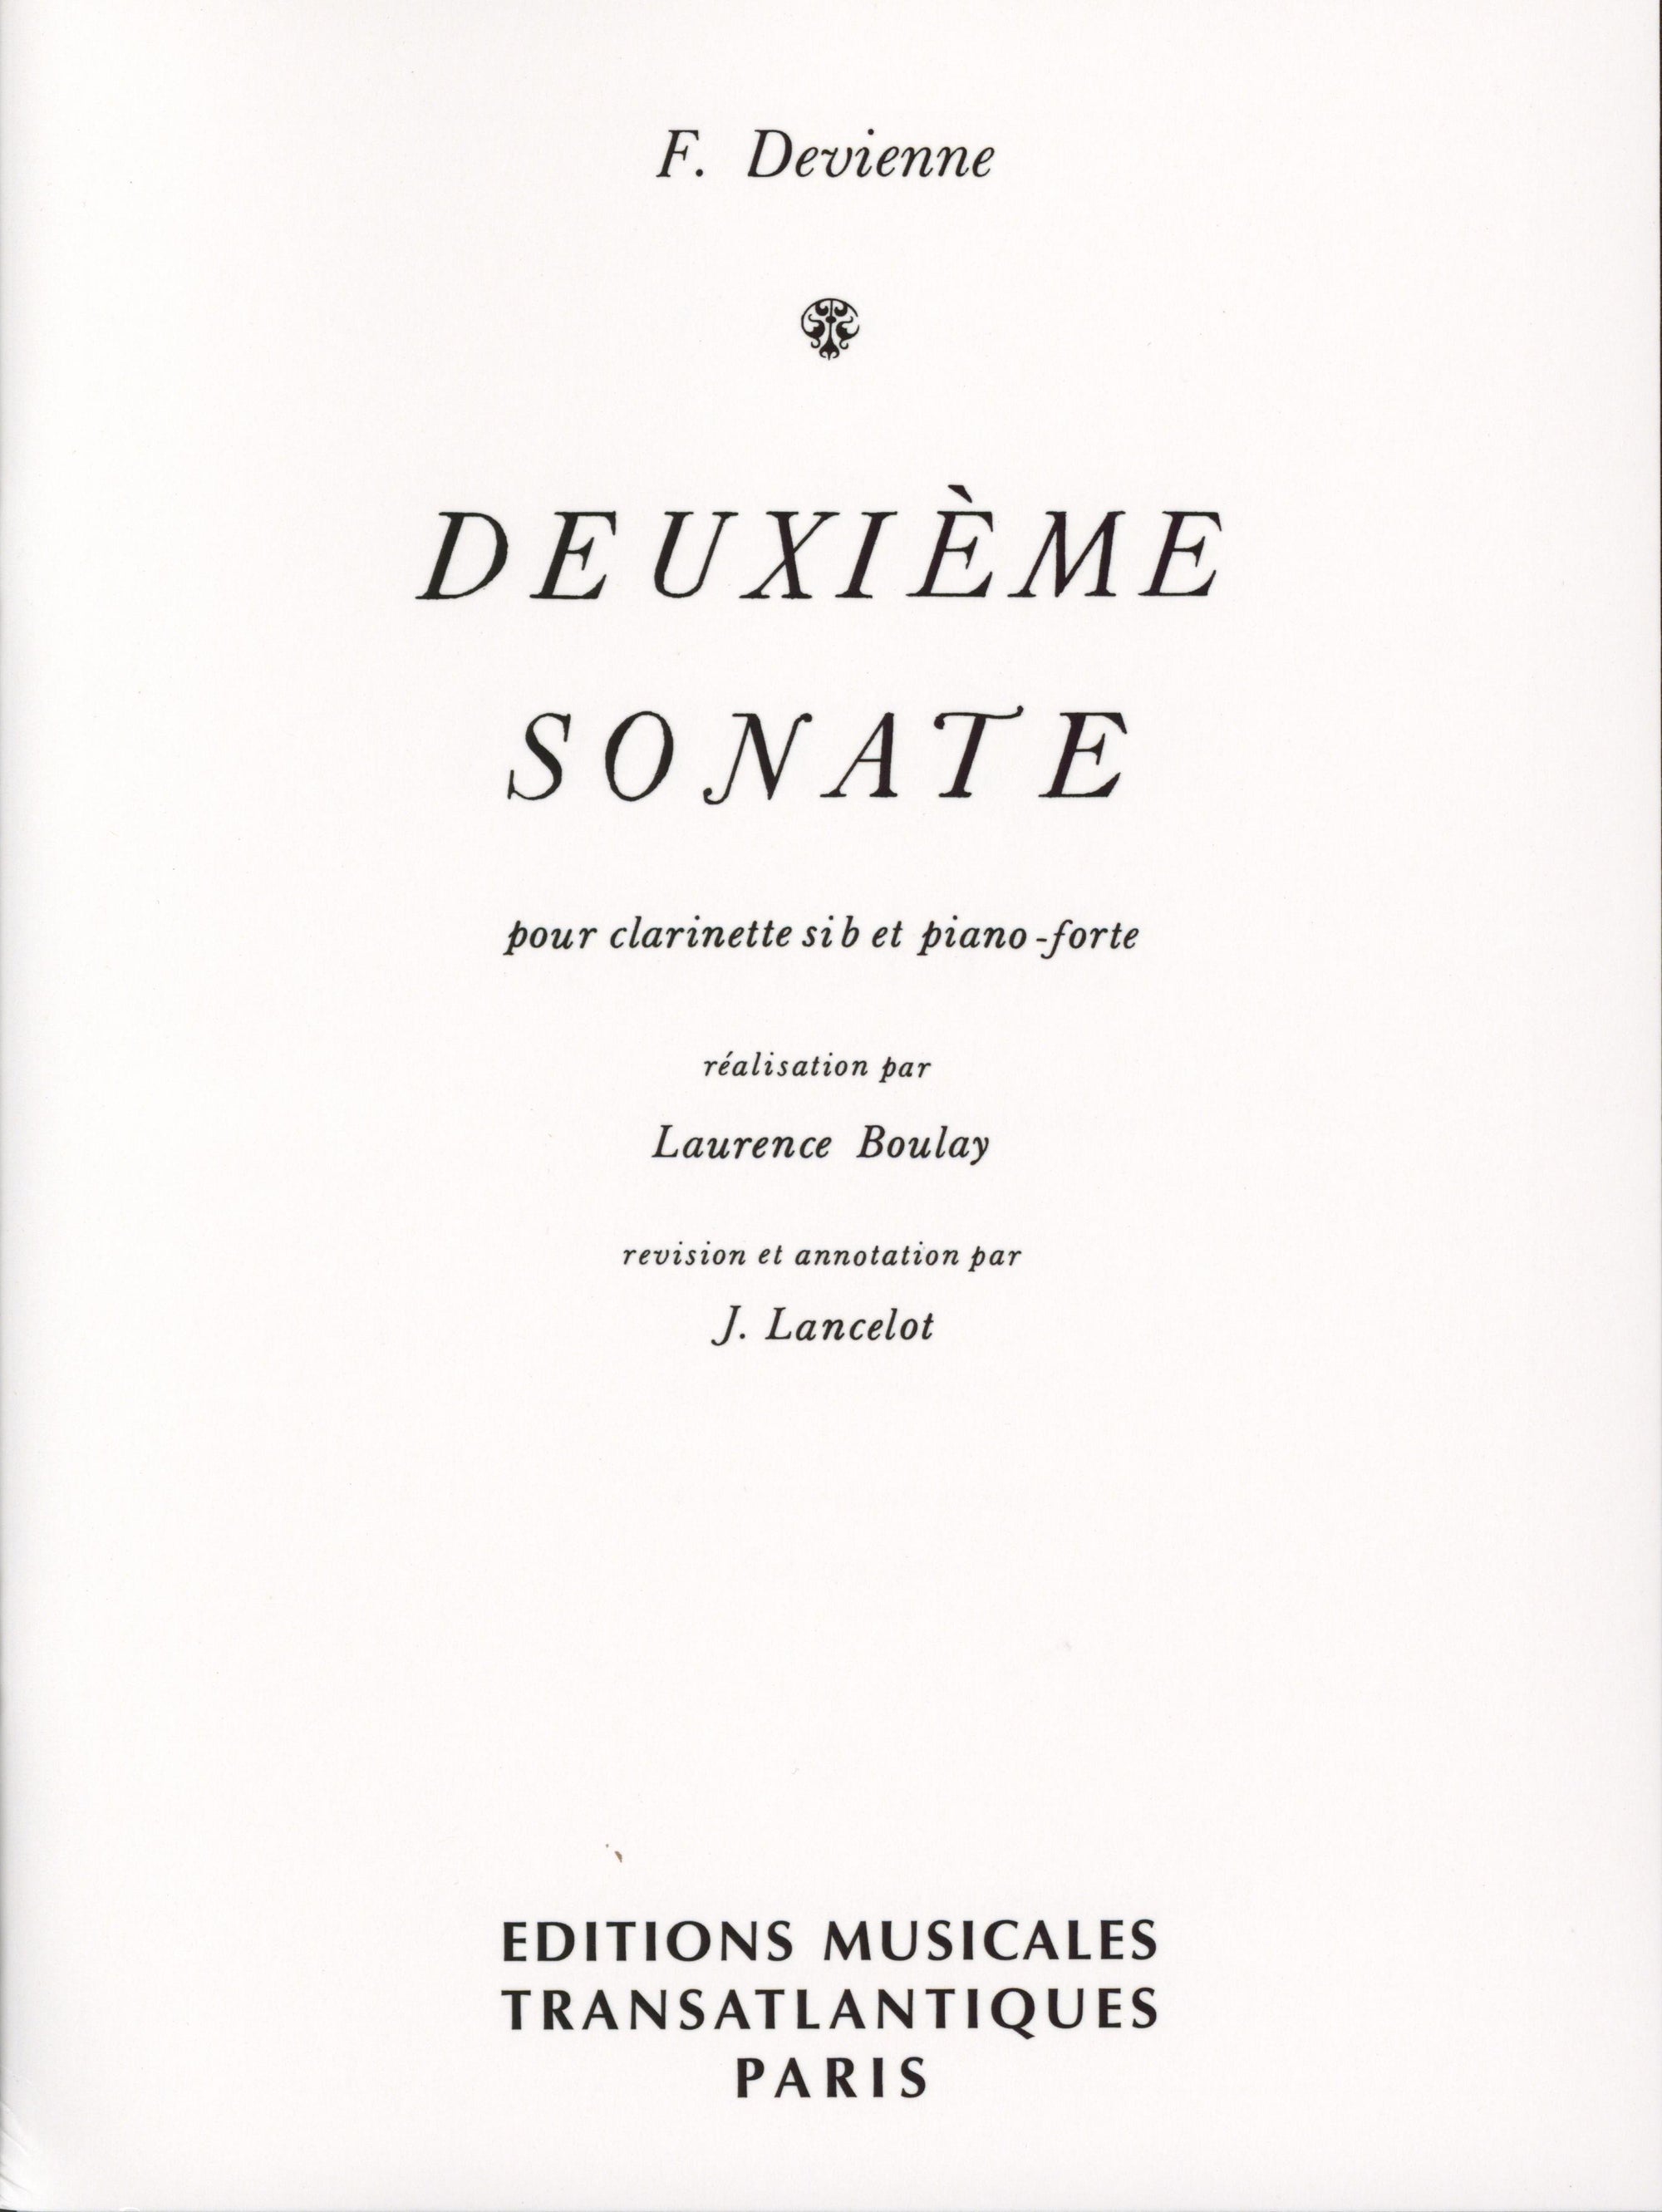 Devienne: Clarinet Sonata No. 2 in E-flat Major